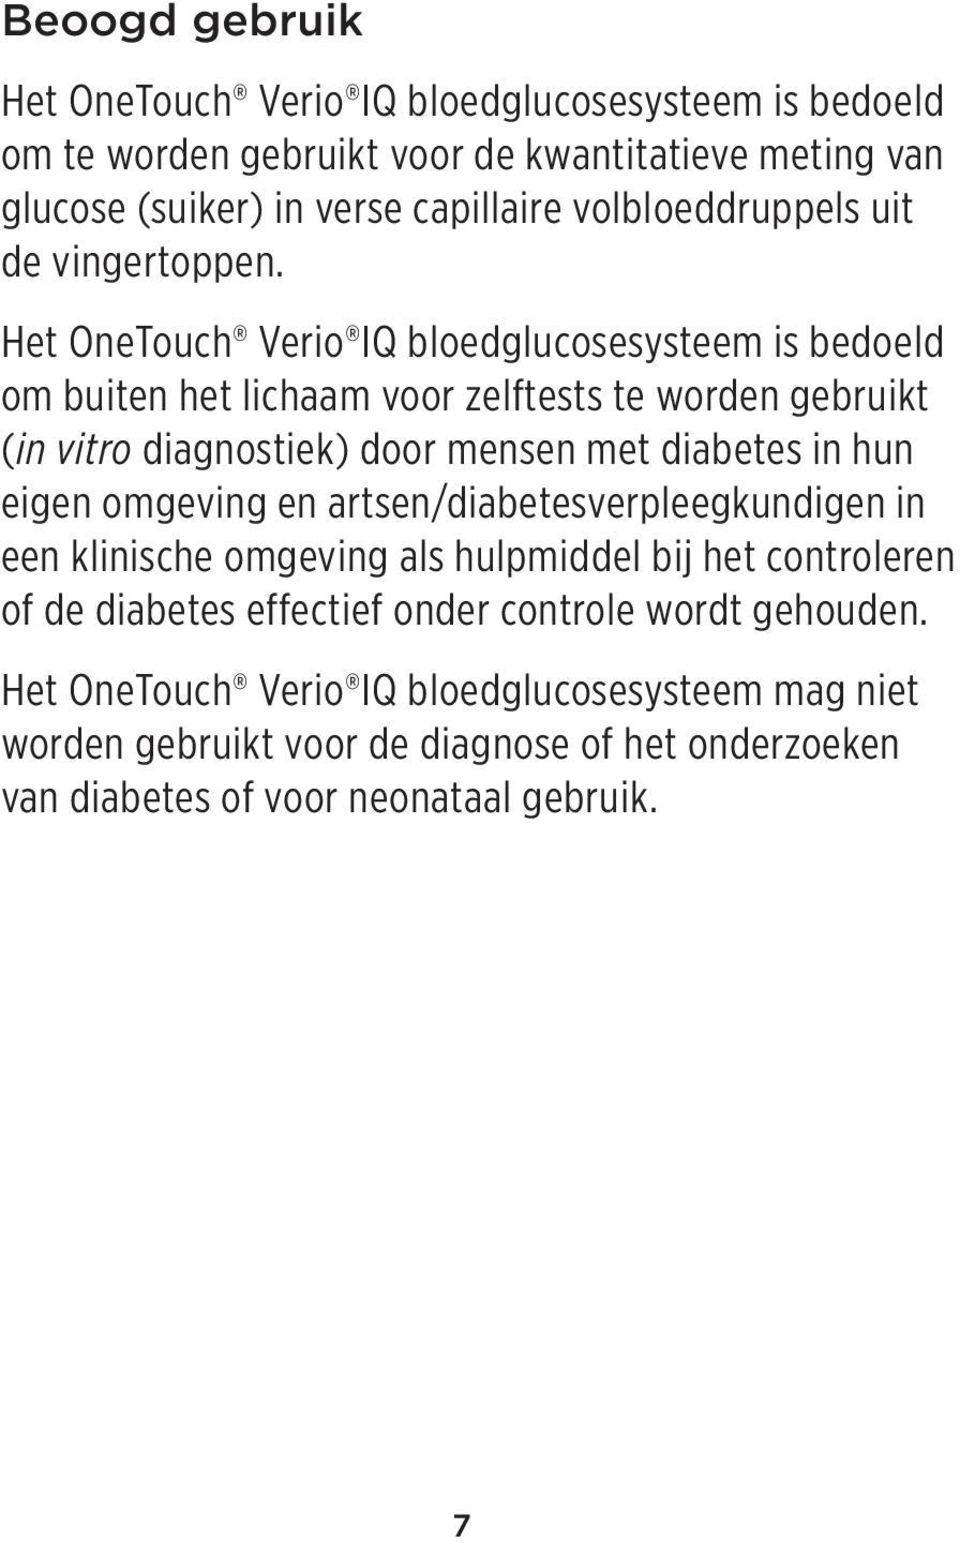 Het OneTouch Verio IQ bloedglucosesysteem is bedoeld om buiten het lichaam voor zelftests te worden gebruikt (in vitro diagnostiek) door mensen met diabetes in hun